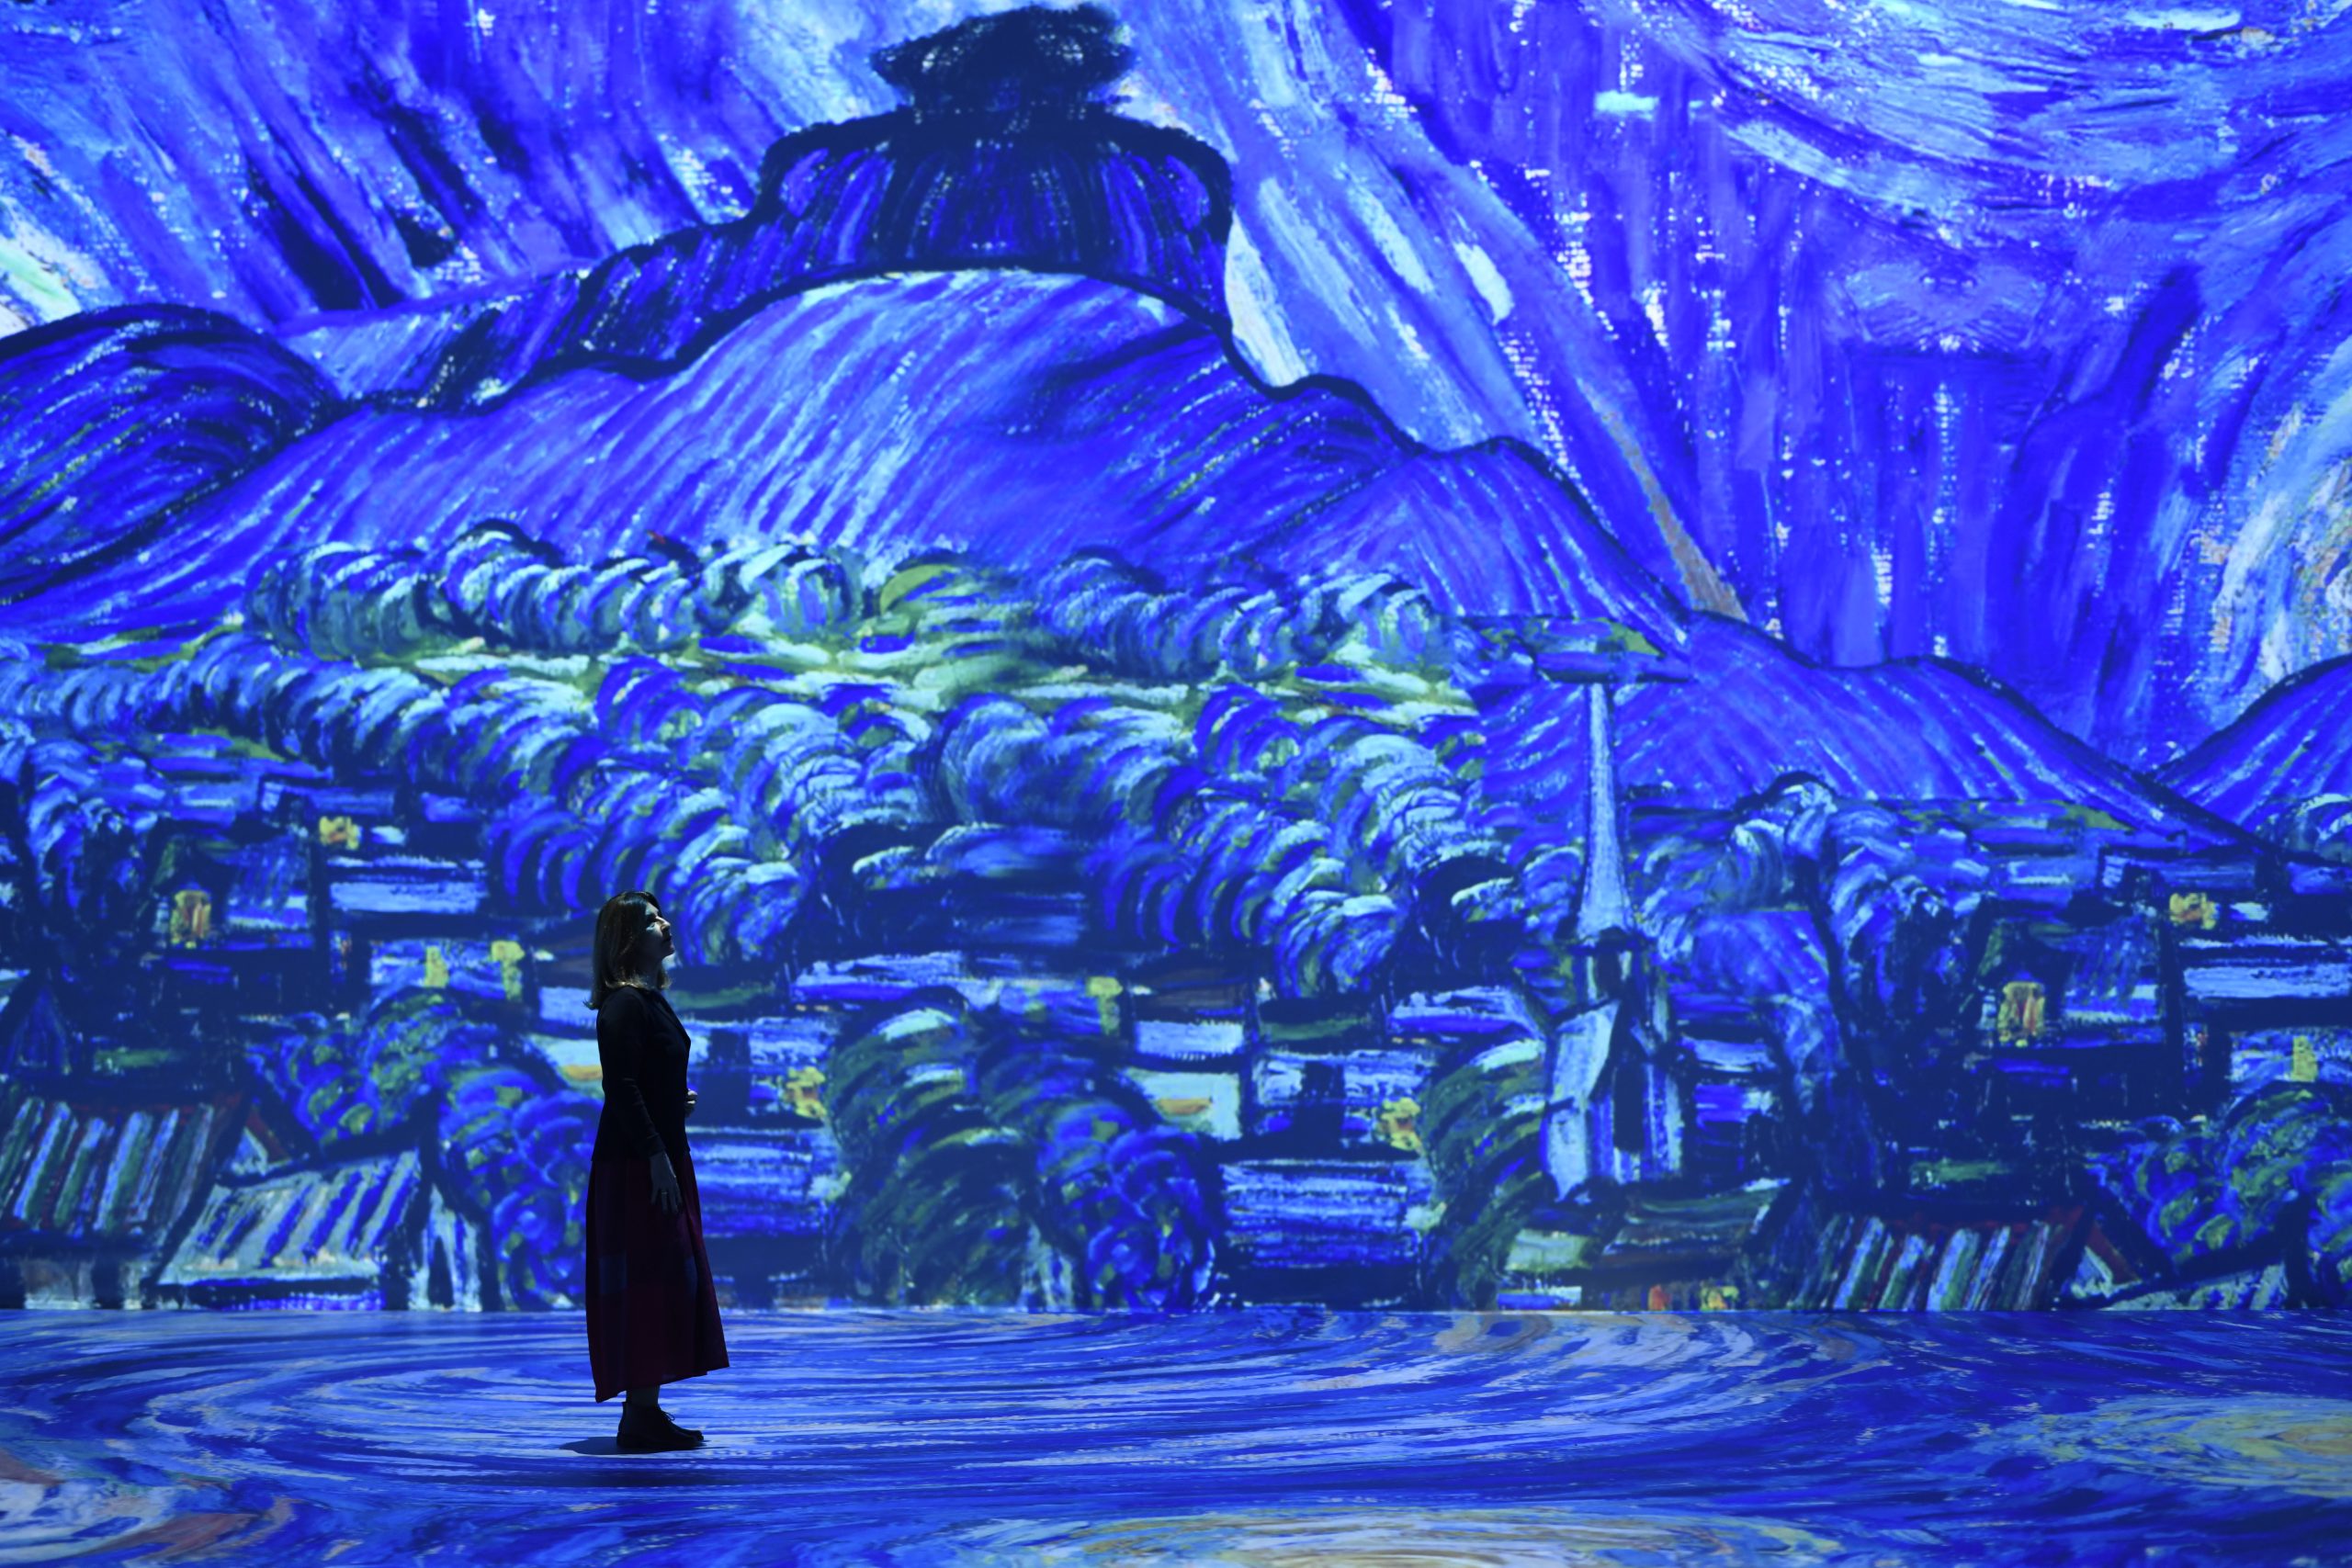 Exposição Van Gogh Live 8k lança ingresso social nas segundas-feiras